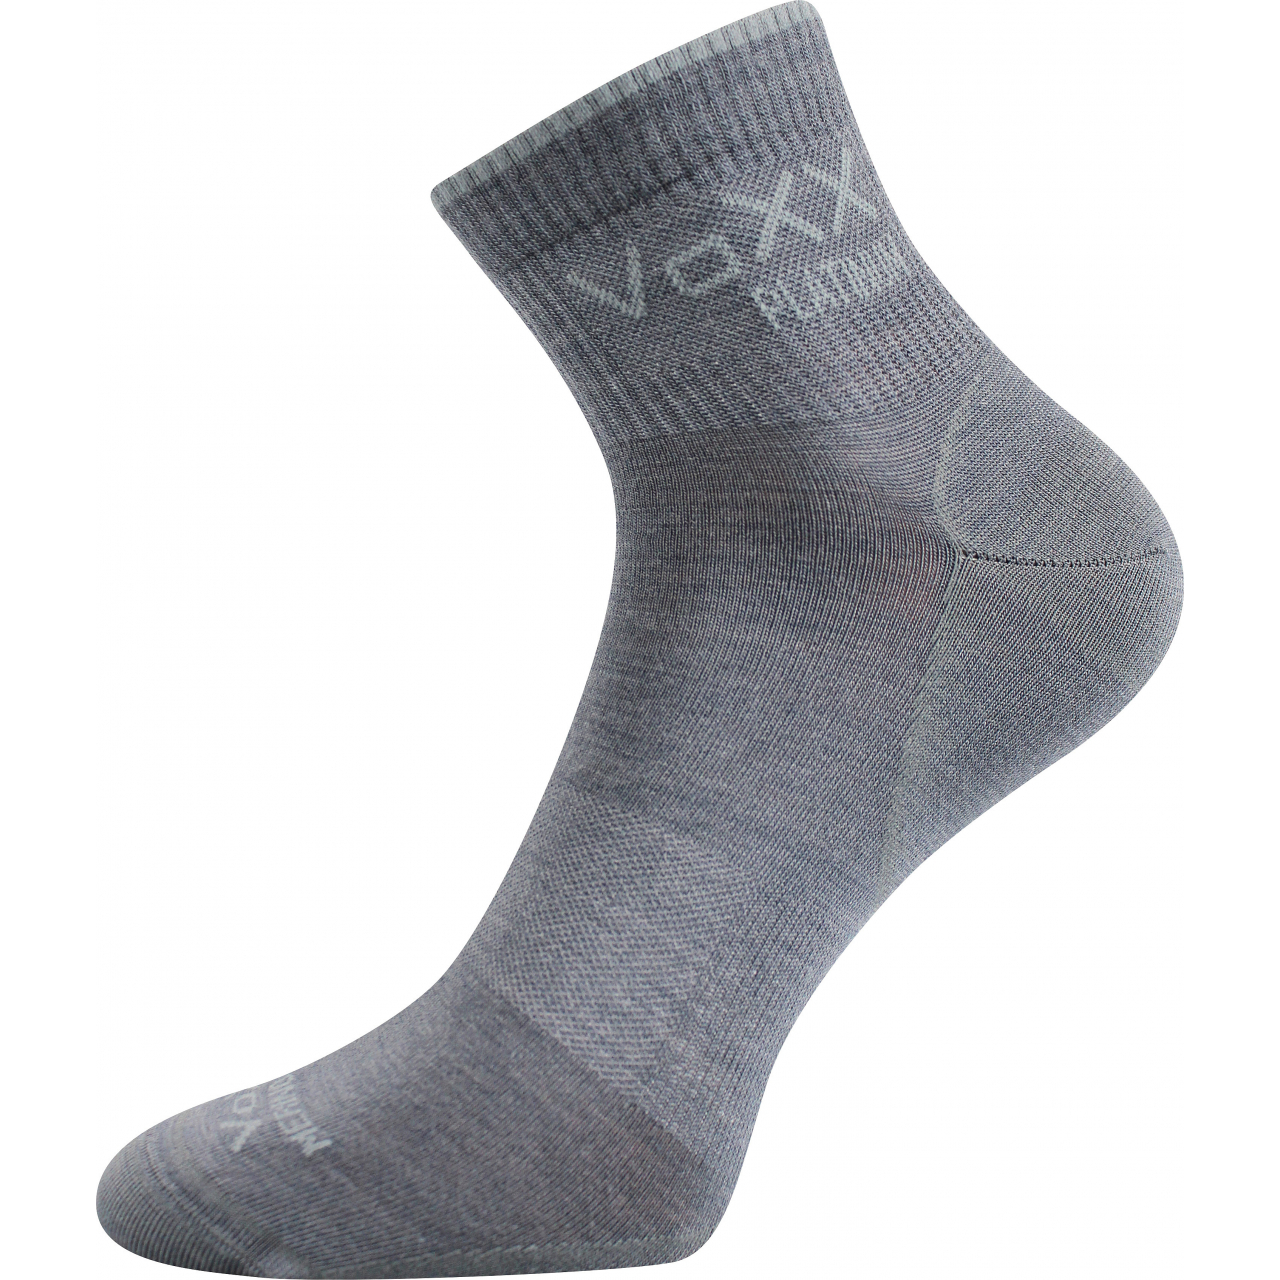 Ponožky klasické unisex Voxx Radik - světle šedé, 43-46